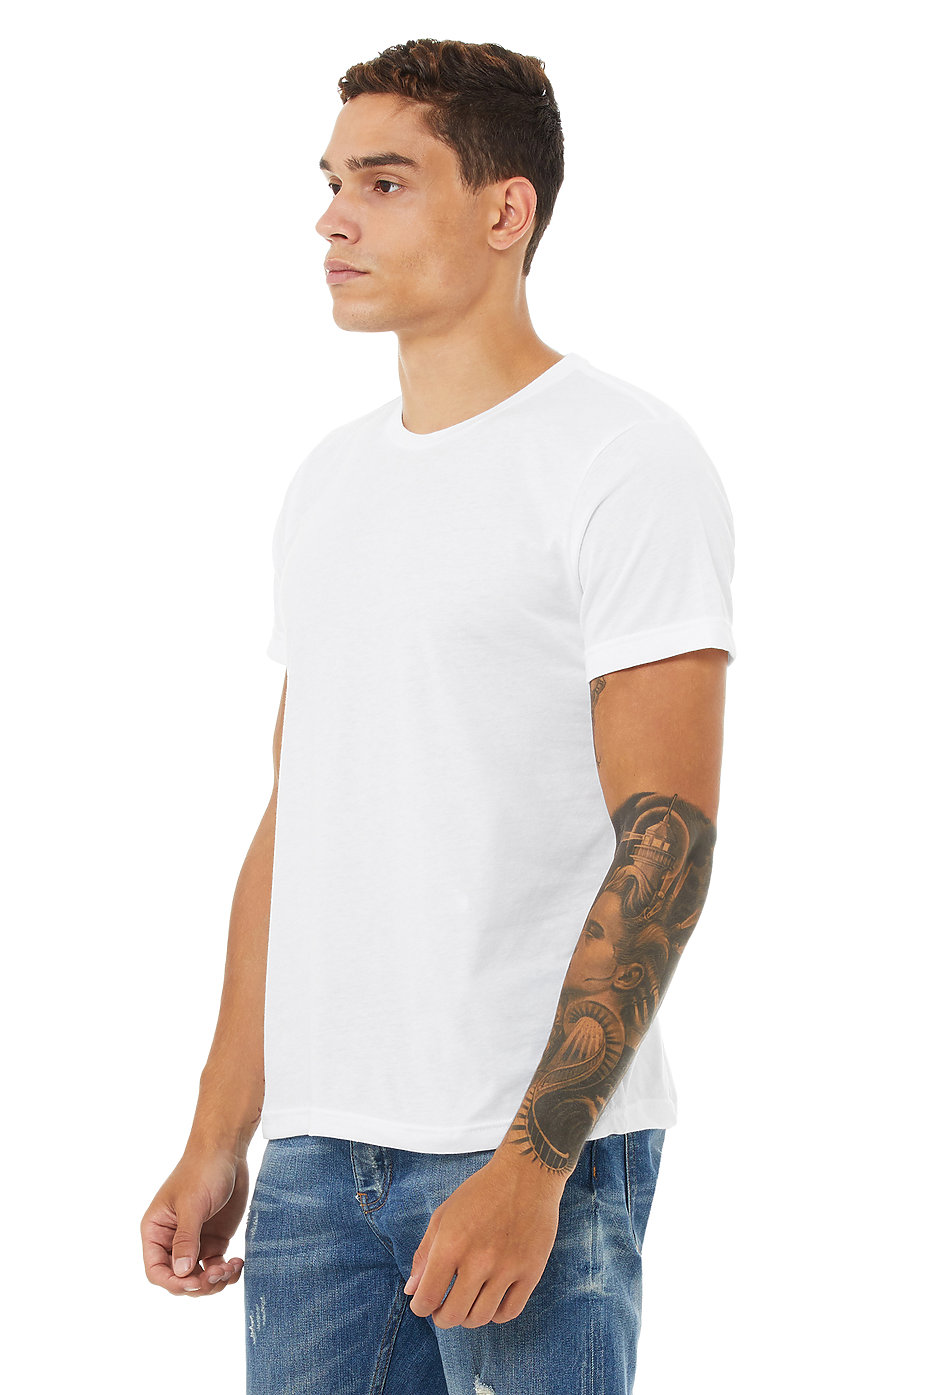 Unisex Poly Cotton Shirts | Unisex Wholesale Clothing | Bulk